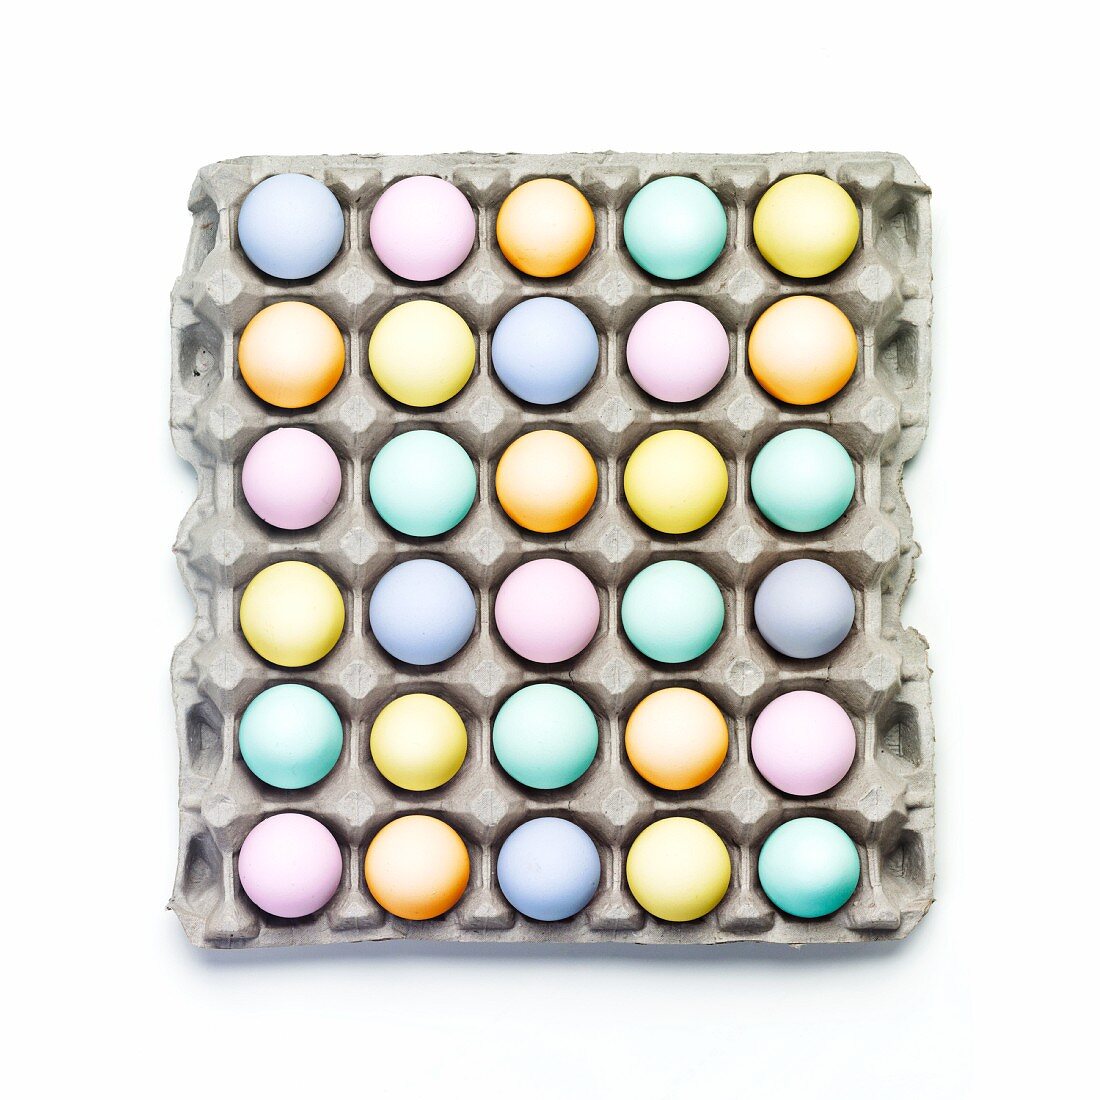 Eierkarton mit gefärbten Eiern (Draufsicht)